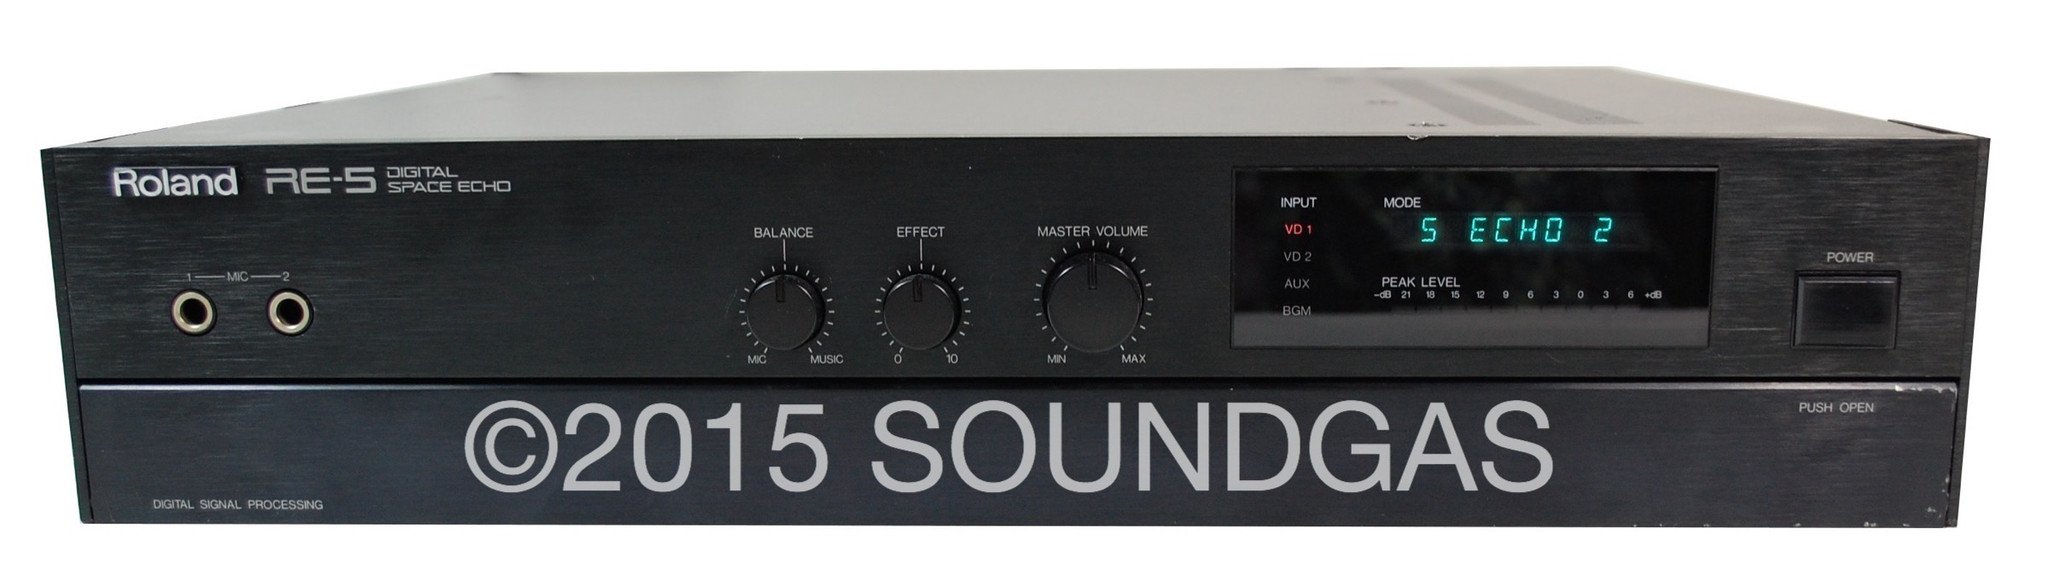 Roland RE-5 Digital Space Echo FOR SALE - Soundgas